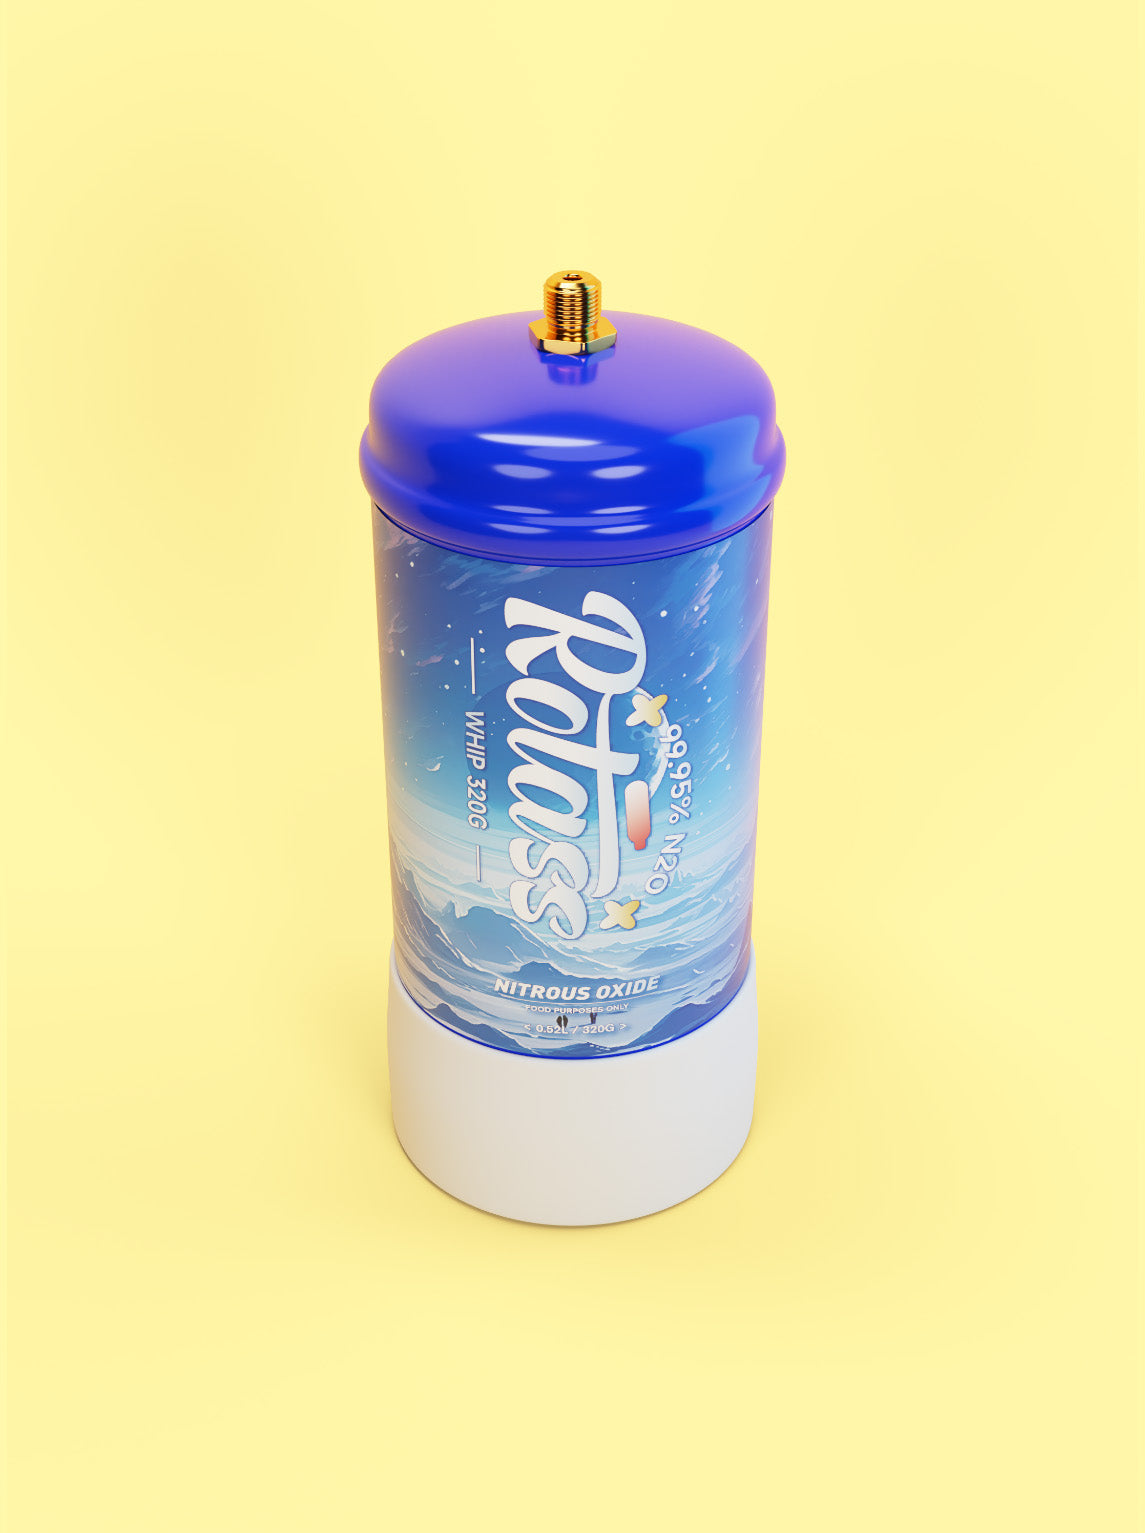 Frontalansicht von oben: Die Gasflasche ist im Antarktis-Style designed, mit dem weißen Logo "Rotass" 320g. Der Hintergrund ist hellgelb.